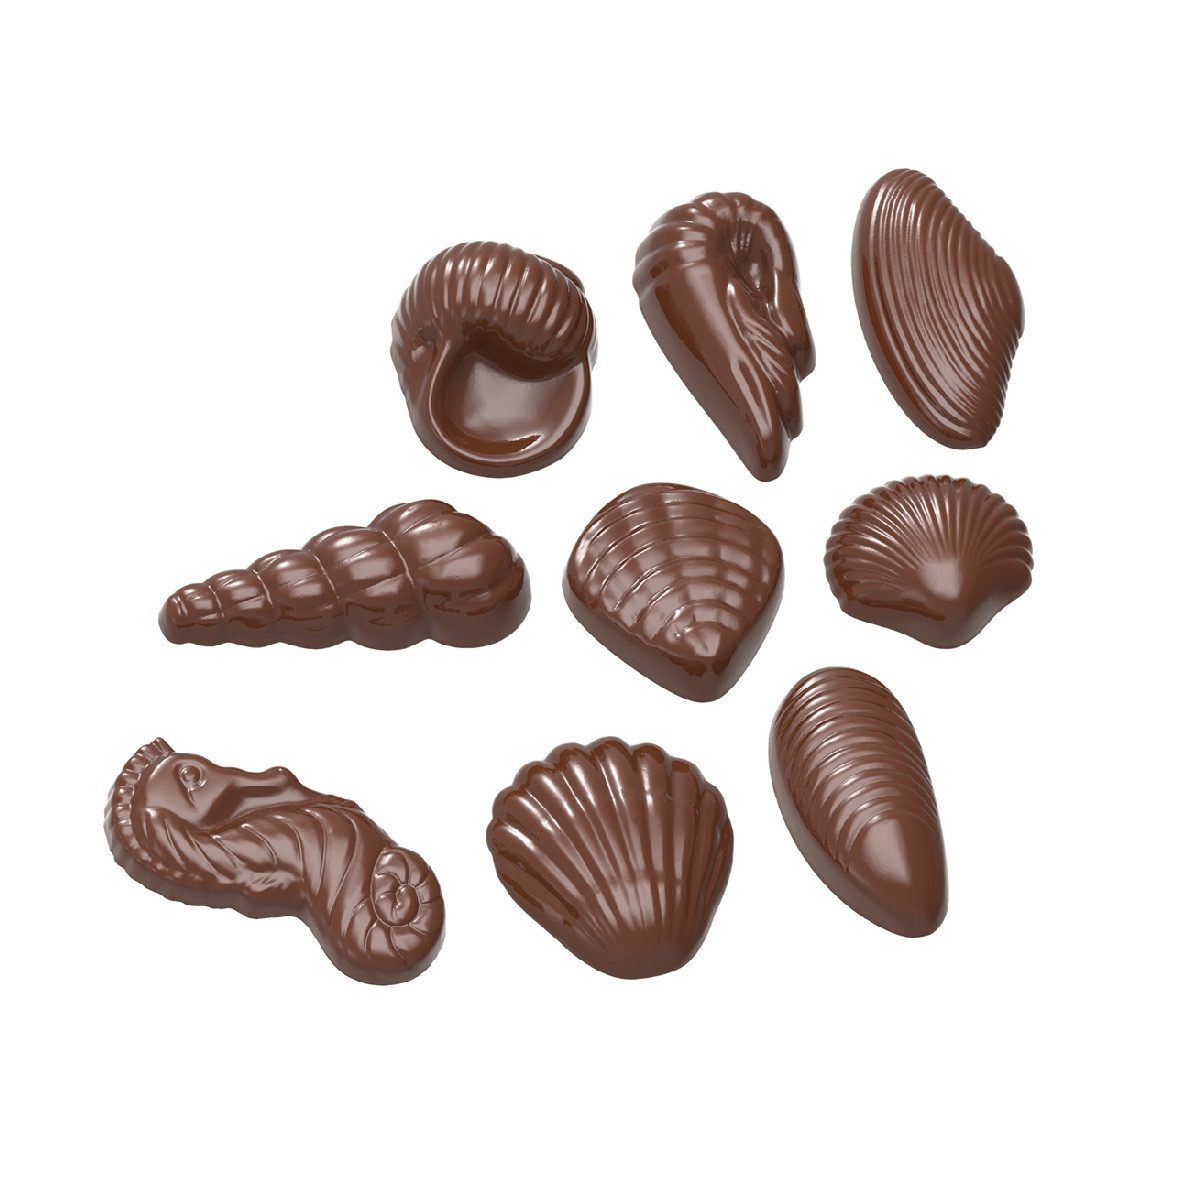 Chocolademal Chocolate World Zeefiguren (22x)